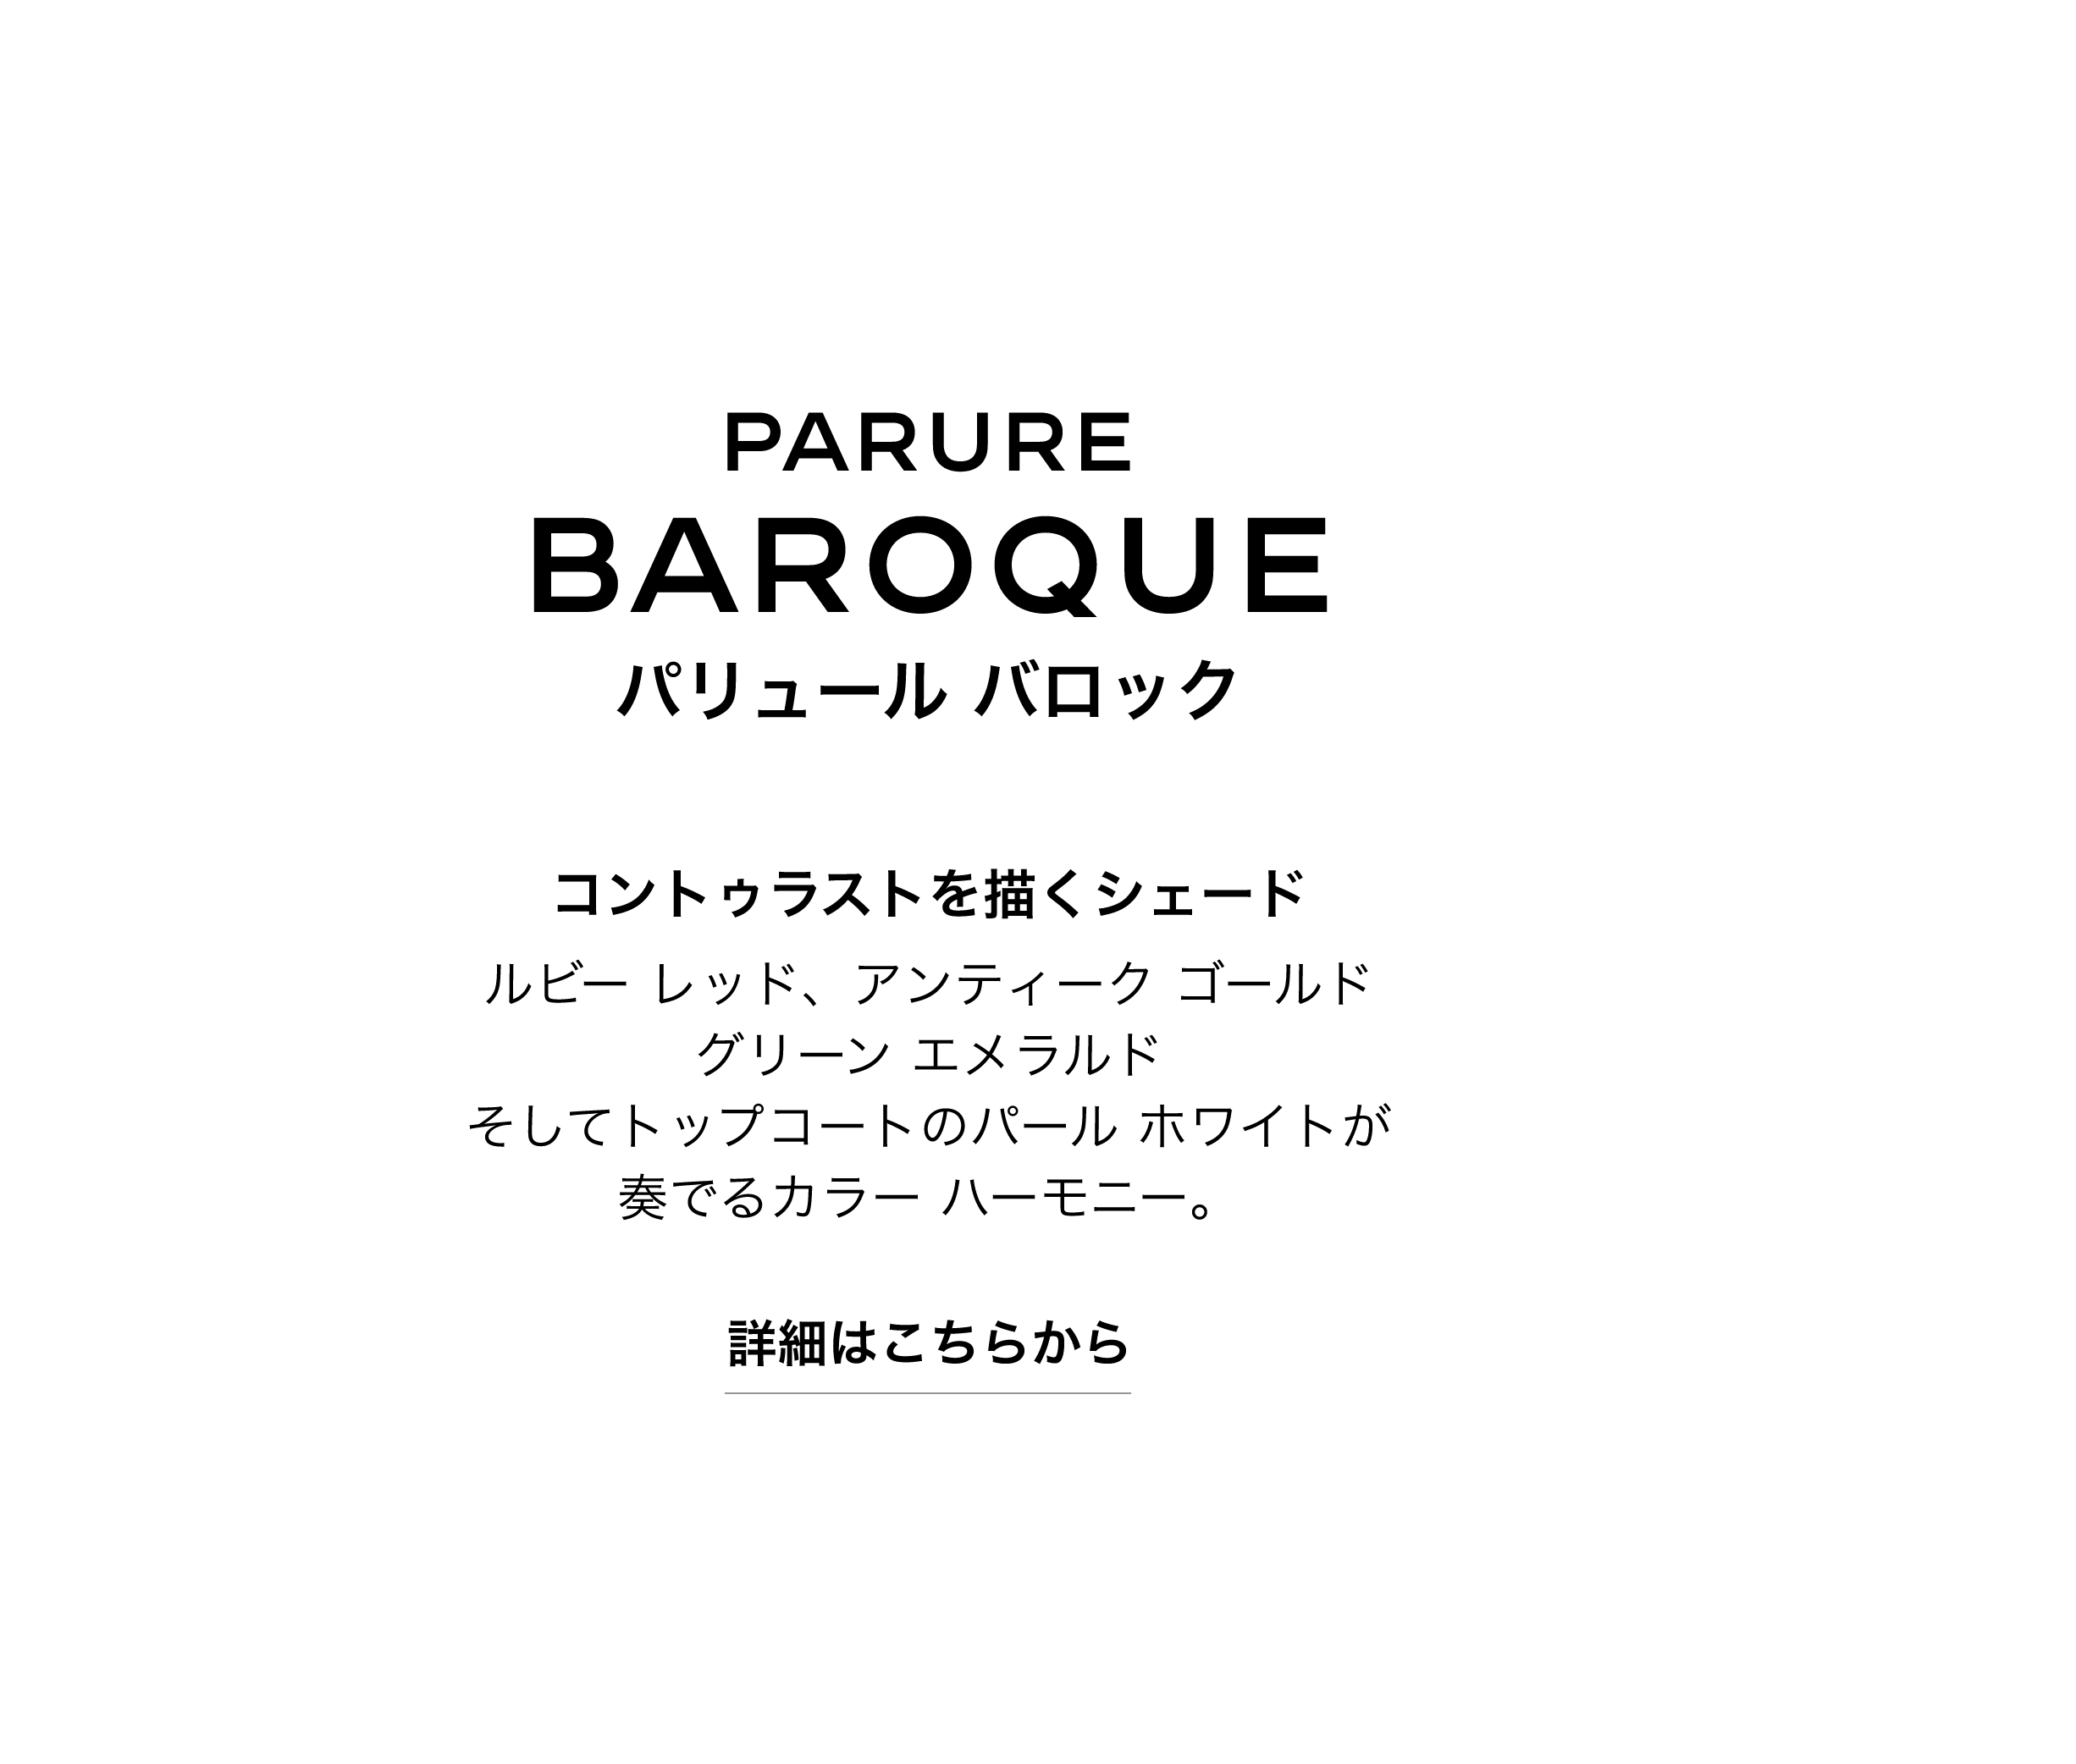 PARURE BAROQUE パリュール バロック コントゥラストを描くシェード ルビー レッド、アンティーク ゴールド グリーン エメラルド　そしてトップコートのパール ホワイトが奏でるカラー ハーモニー。 詳細はこちらから